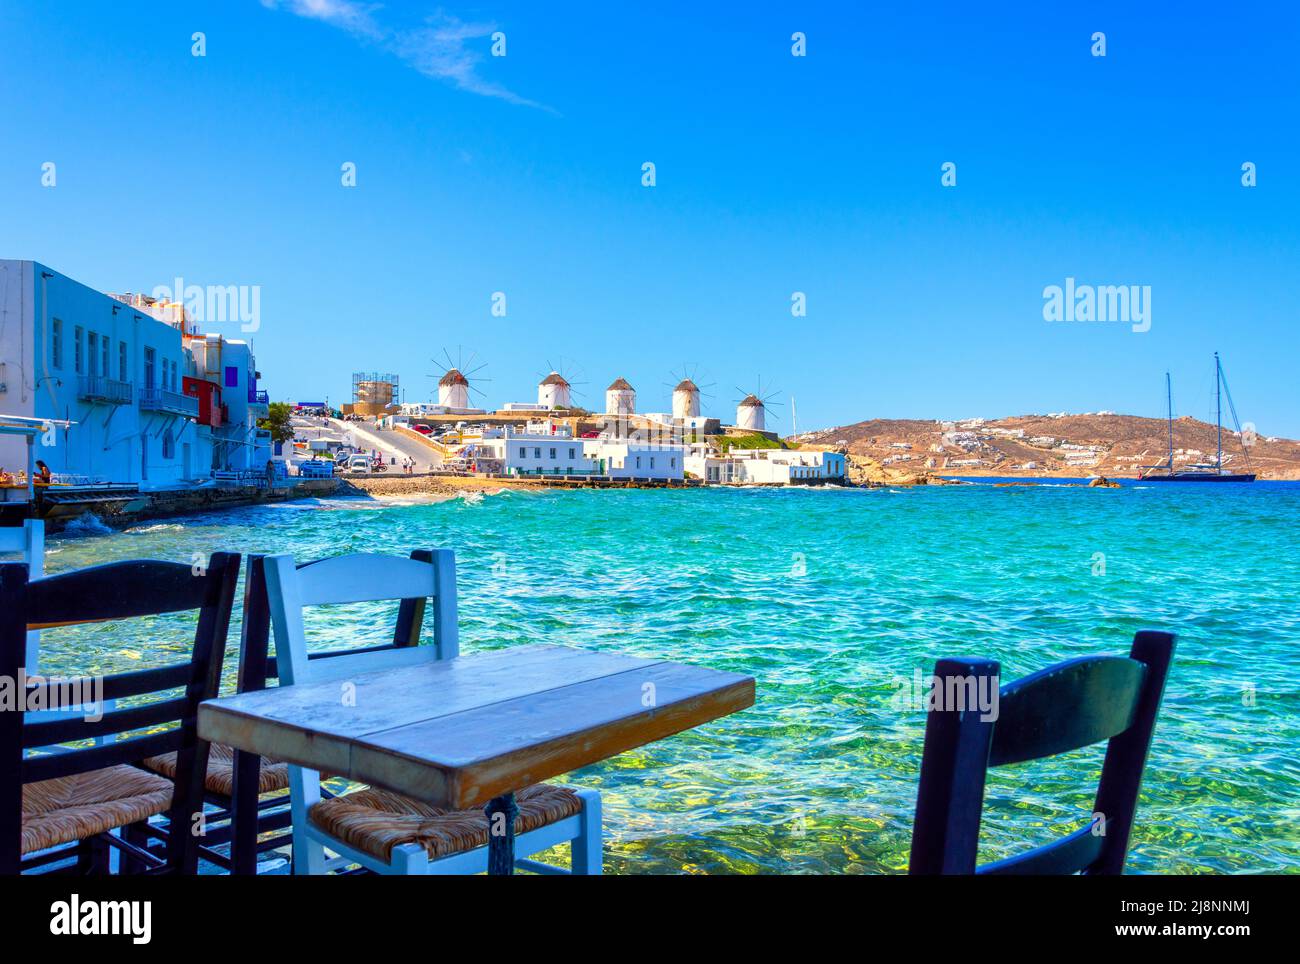 Mykonos town in Mykonos island, Greece Stock Photo